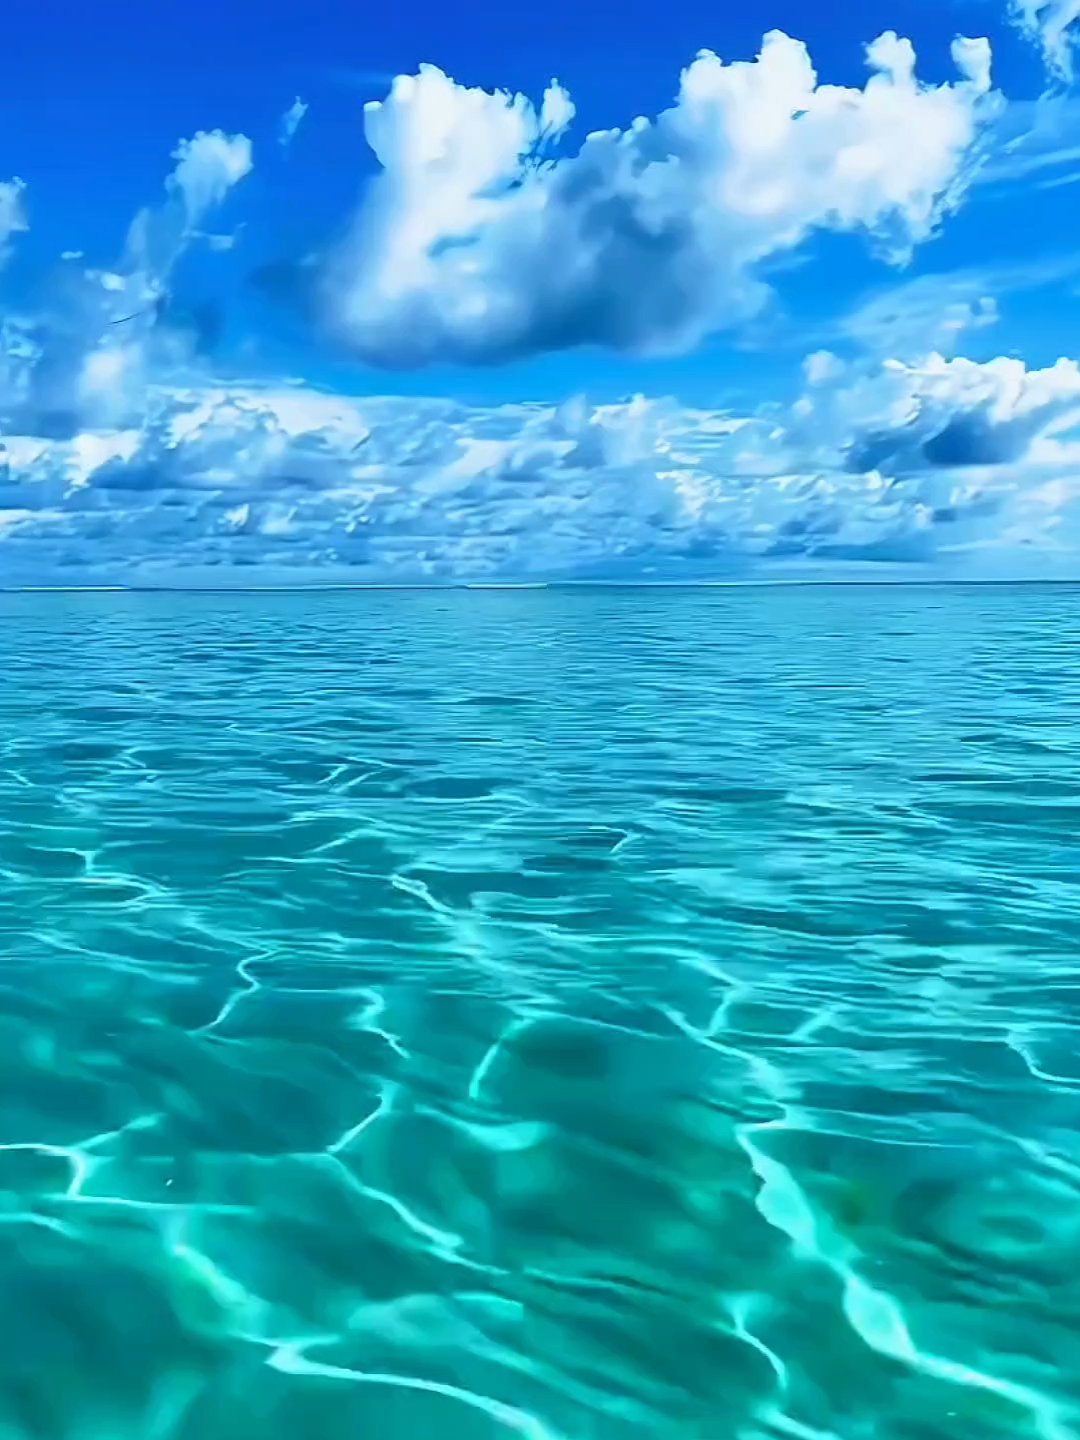 遇到这么好看的玻璃海 当然是要分享给你啦，